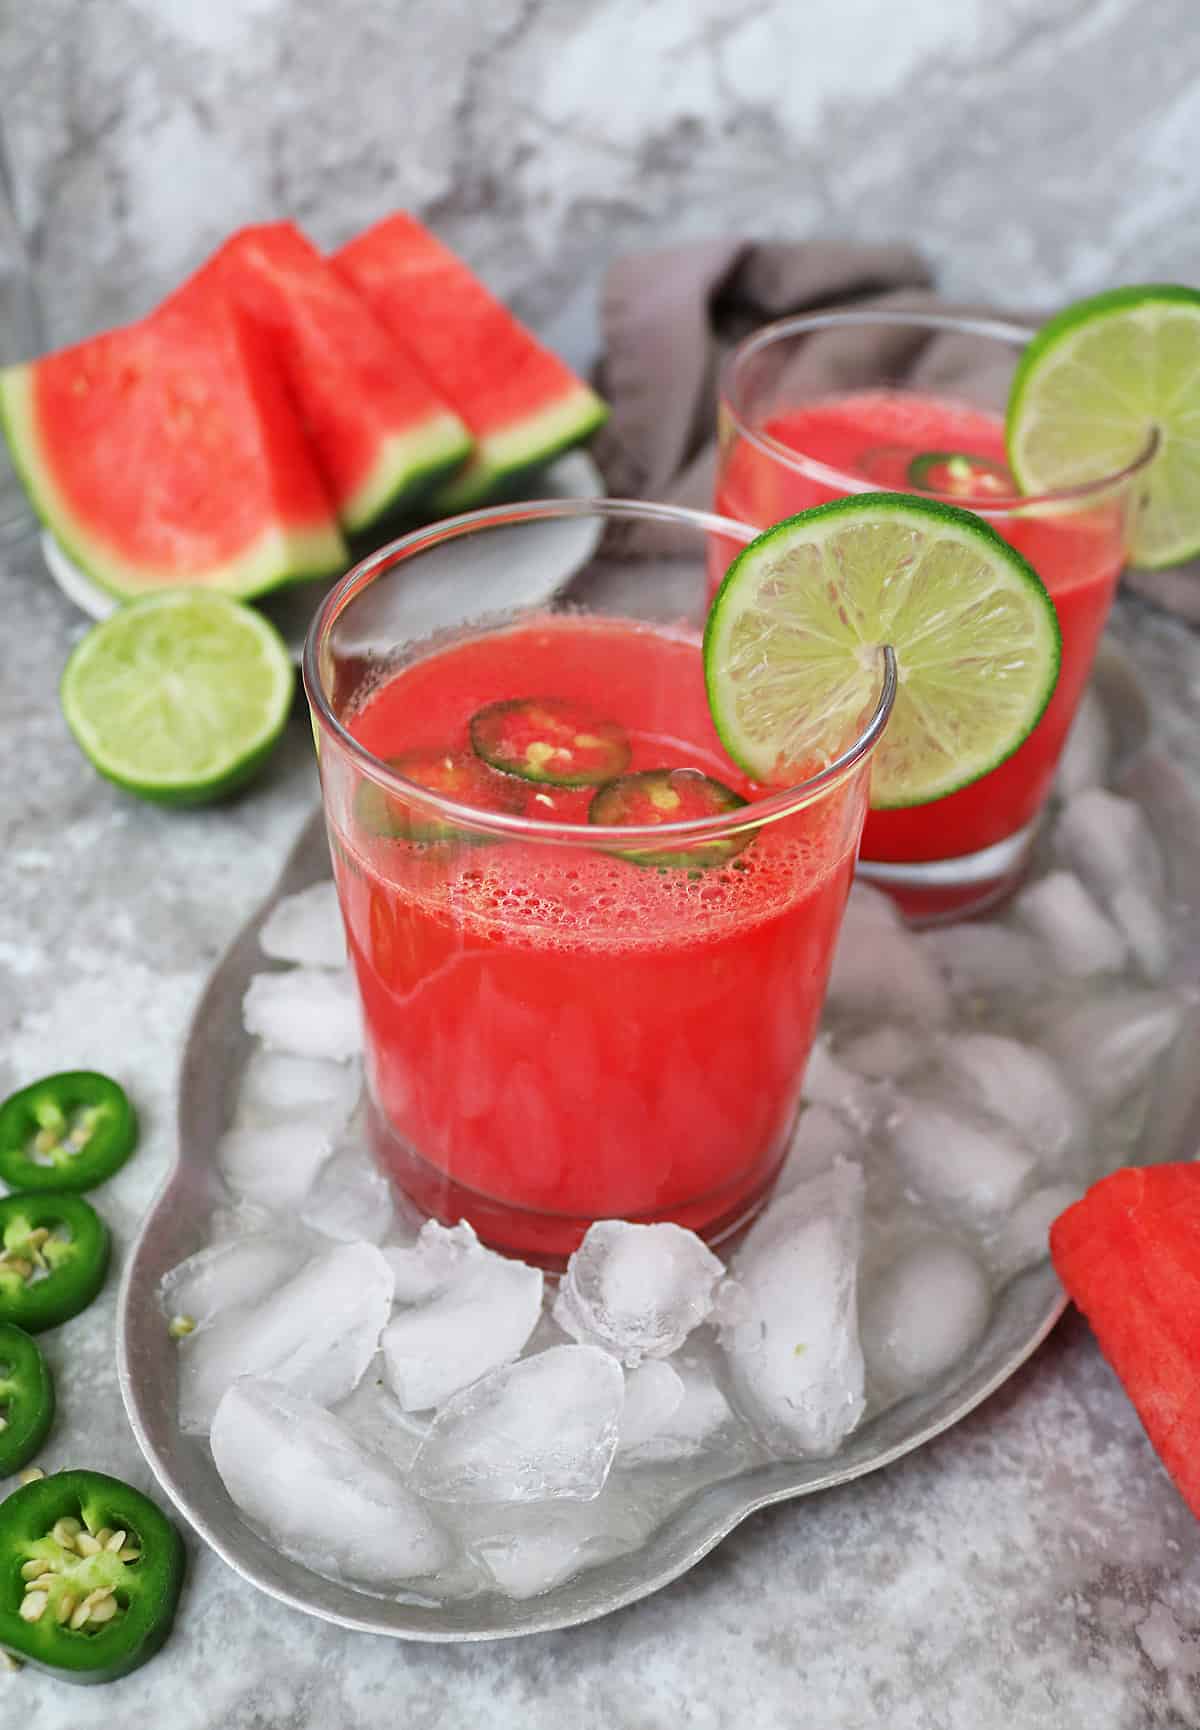 لیموناد هندوانه - لیوان آب هندوانه در یخ